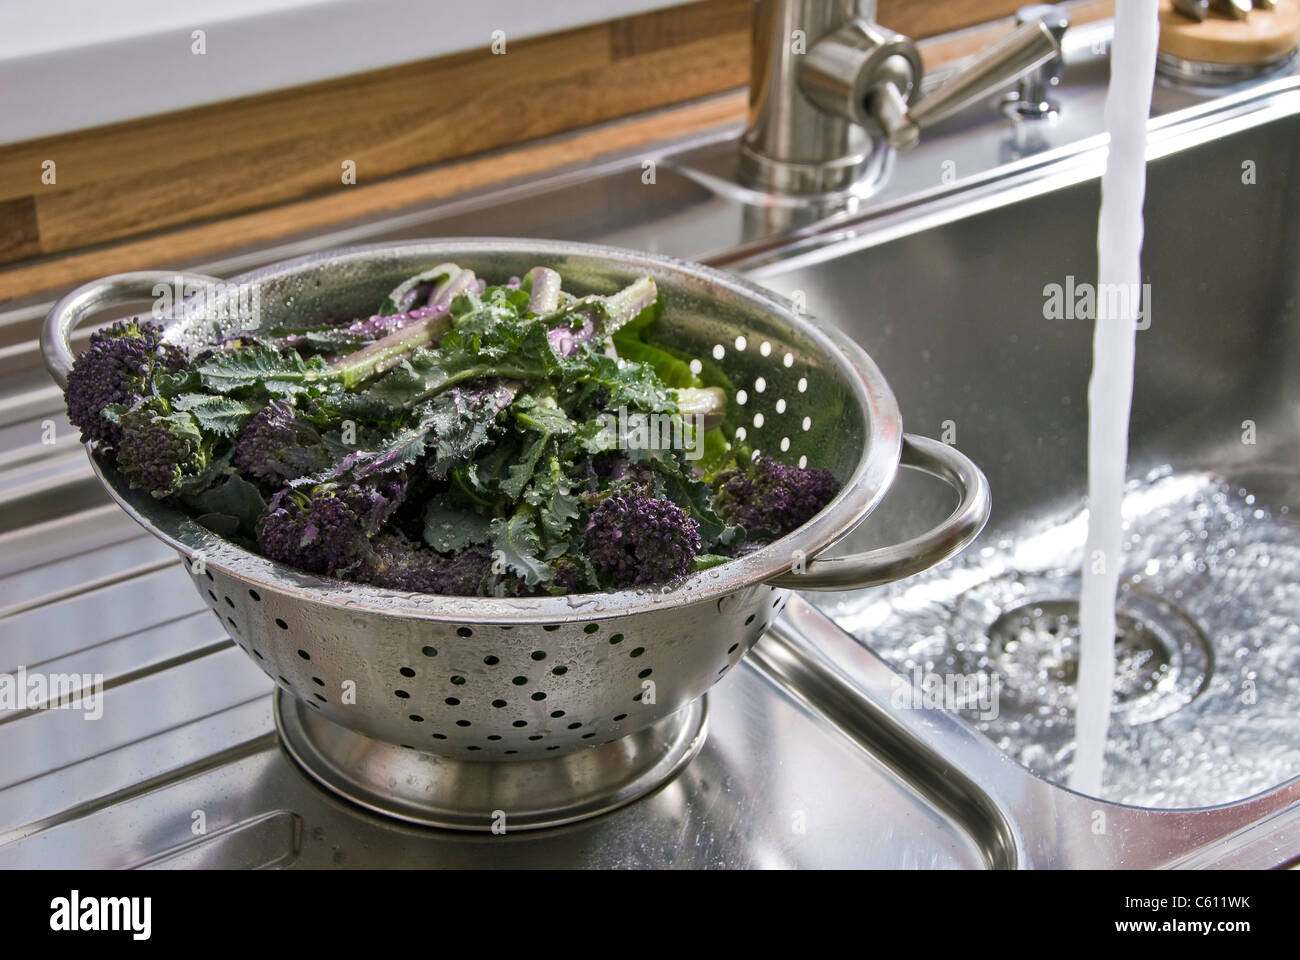 Waschen Gemüse in einem Edelstahl-Sieb. Stockfoto